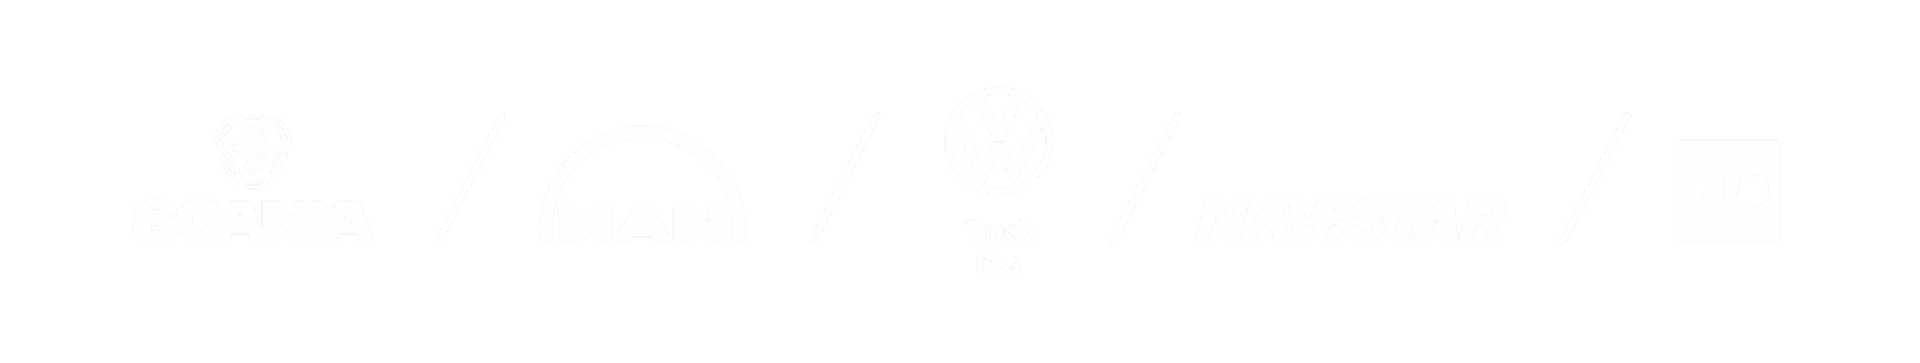 Die Logos der Marken MAN, Scania, VWTB und RIO werden in weiß auf einem grauen Hintergrund abgebildet